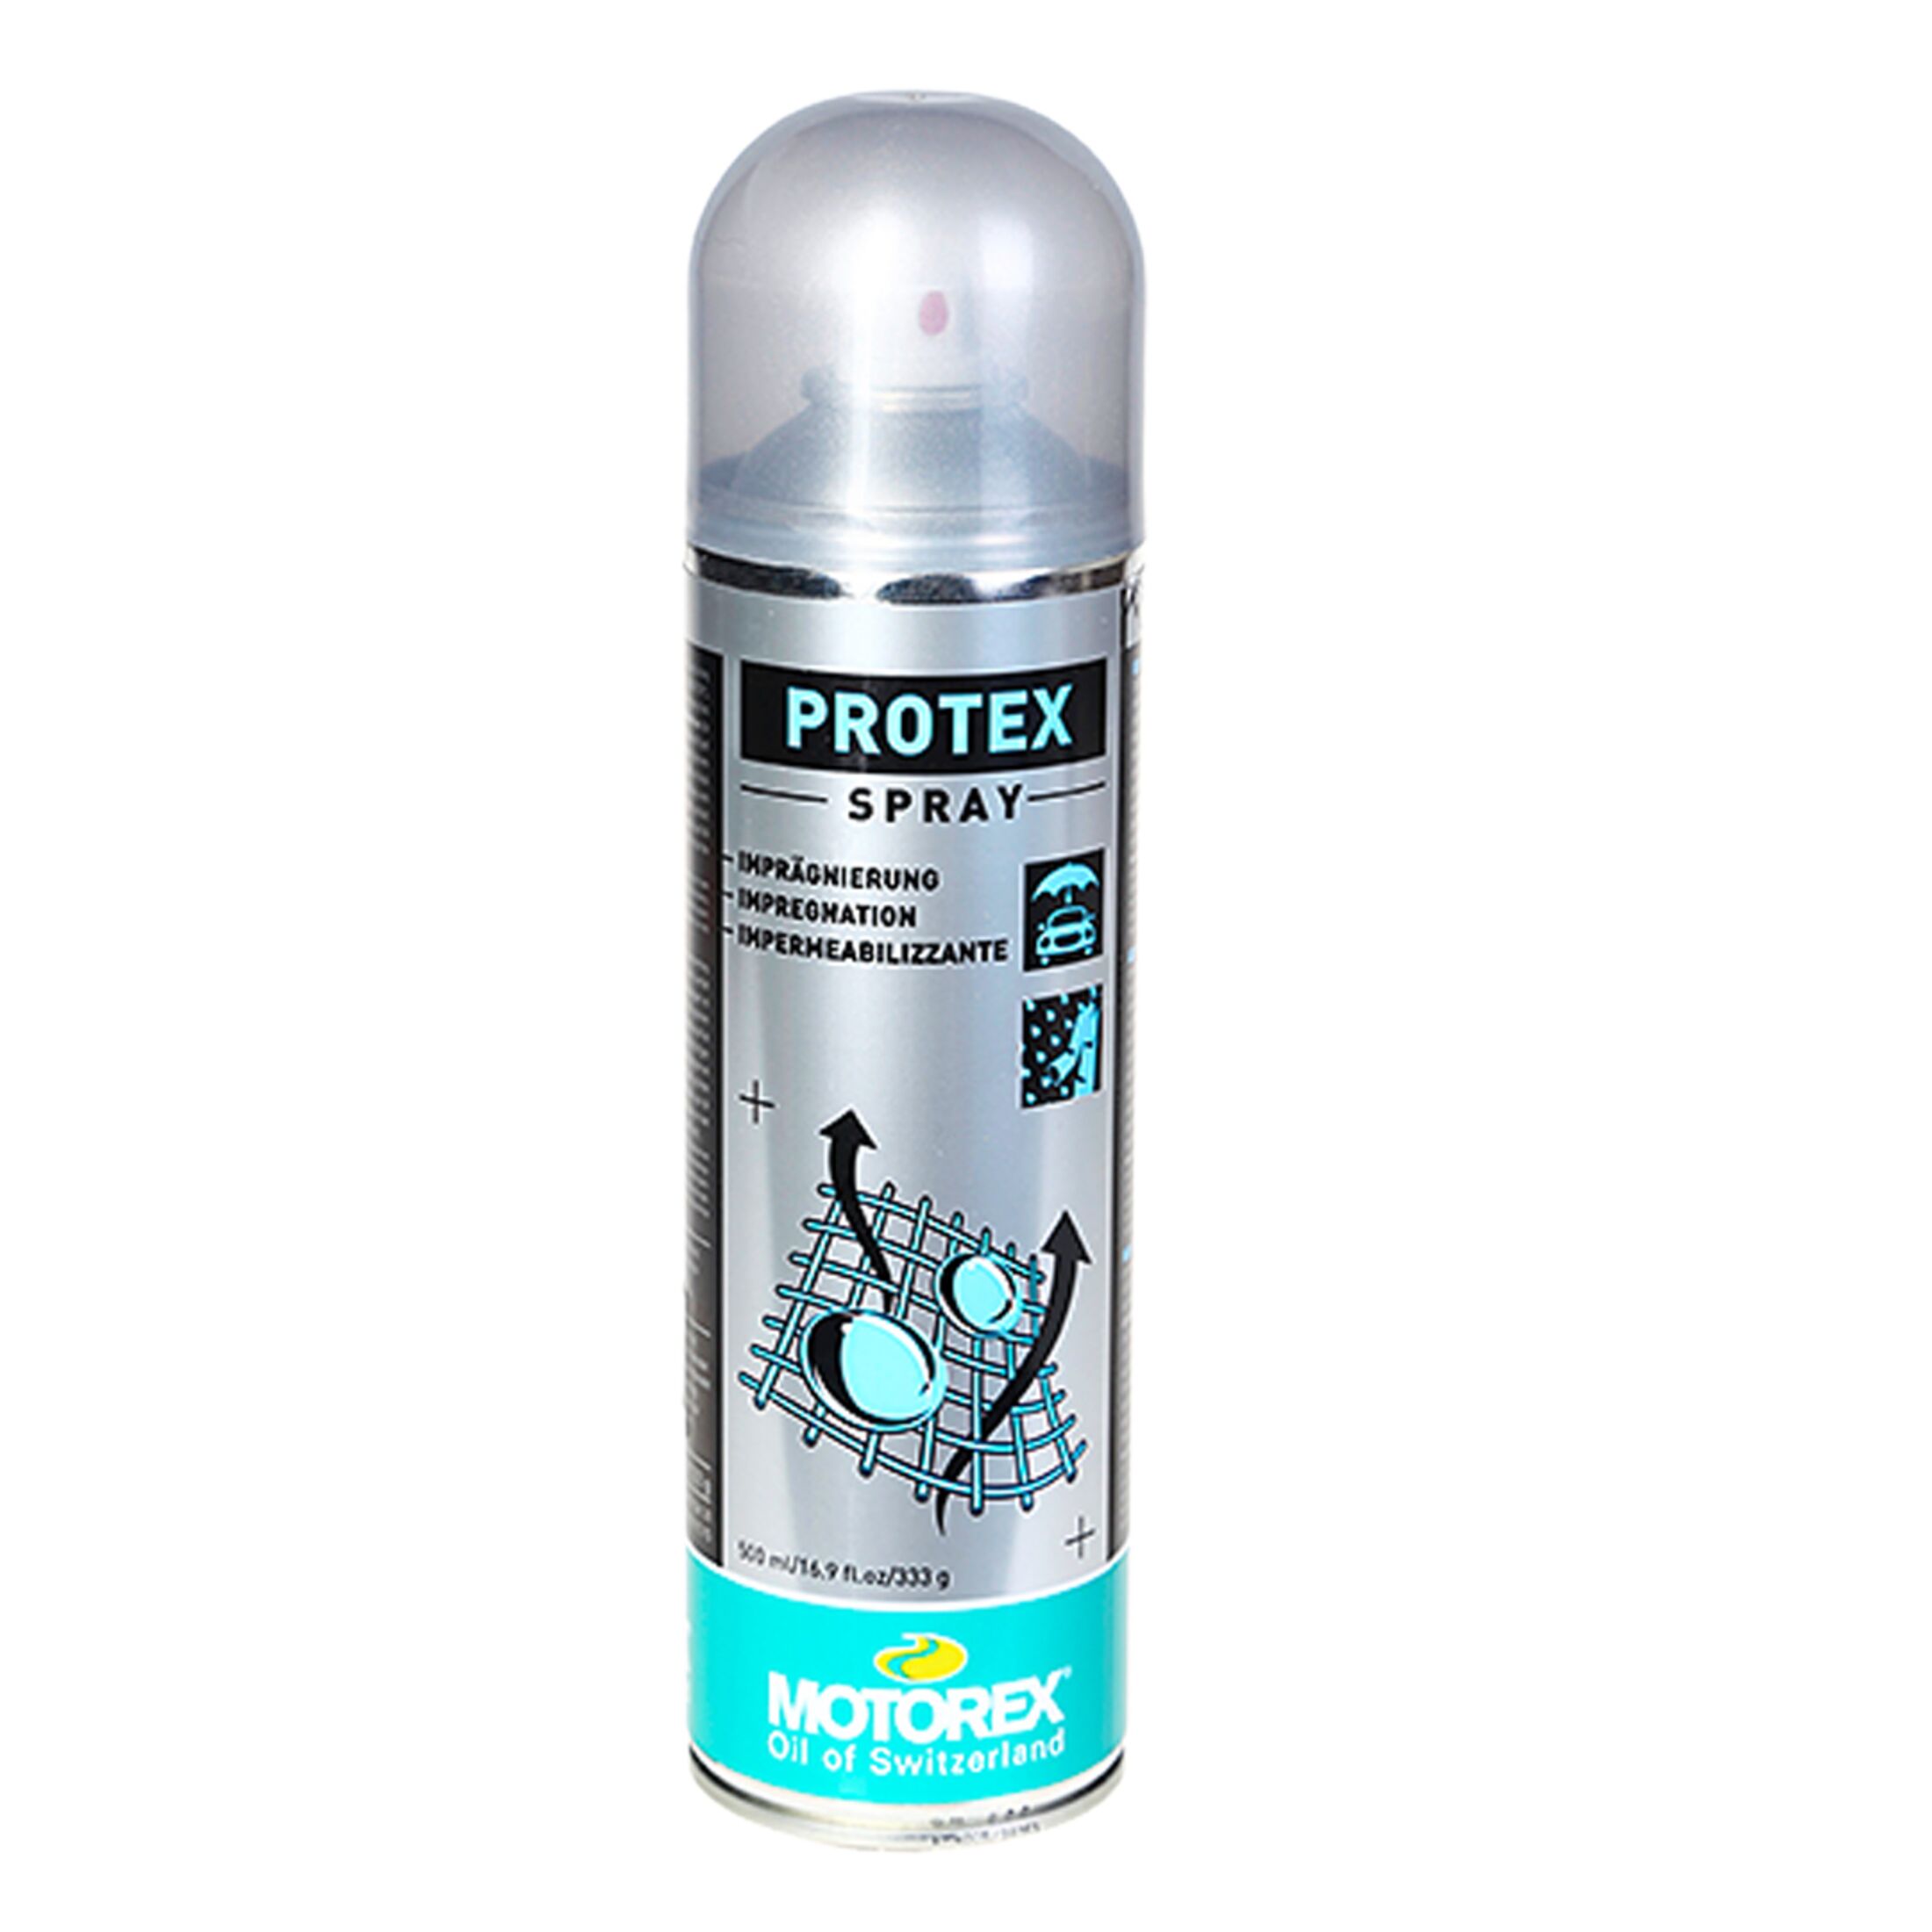 Motorex Protex Spray im Test